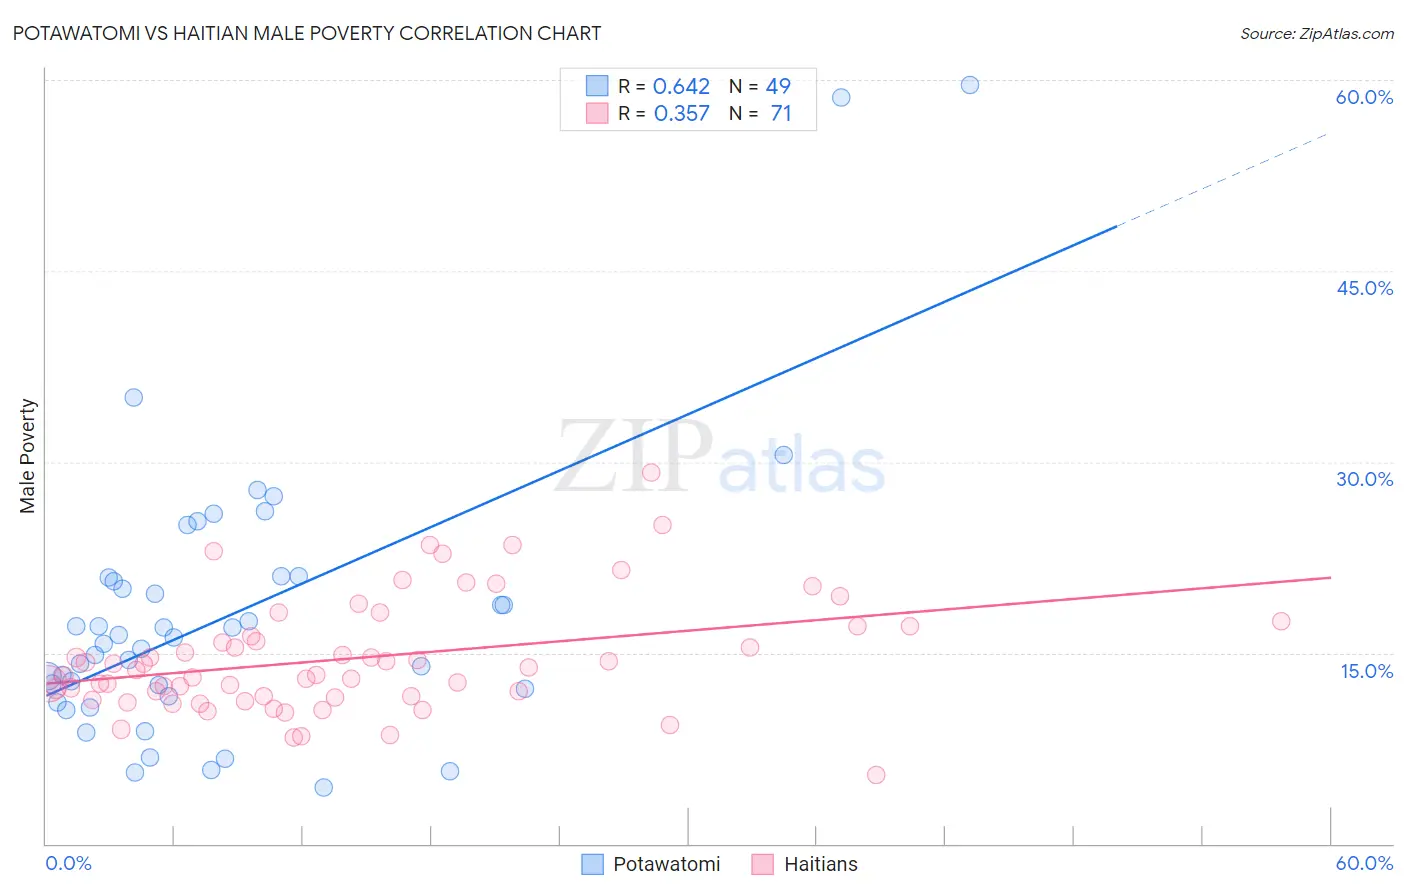 Potawatomi vs Haitian Male Poverty